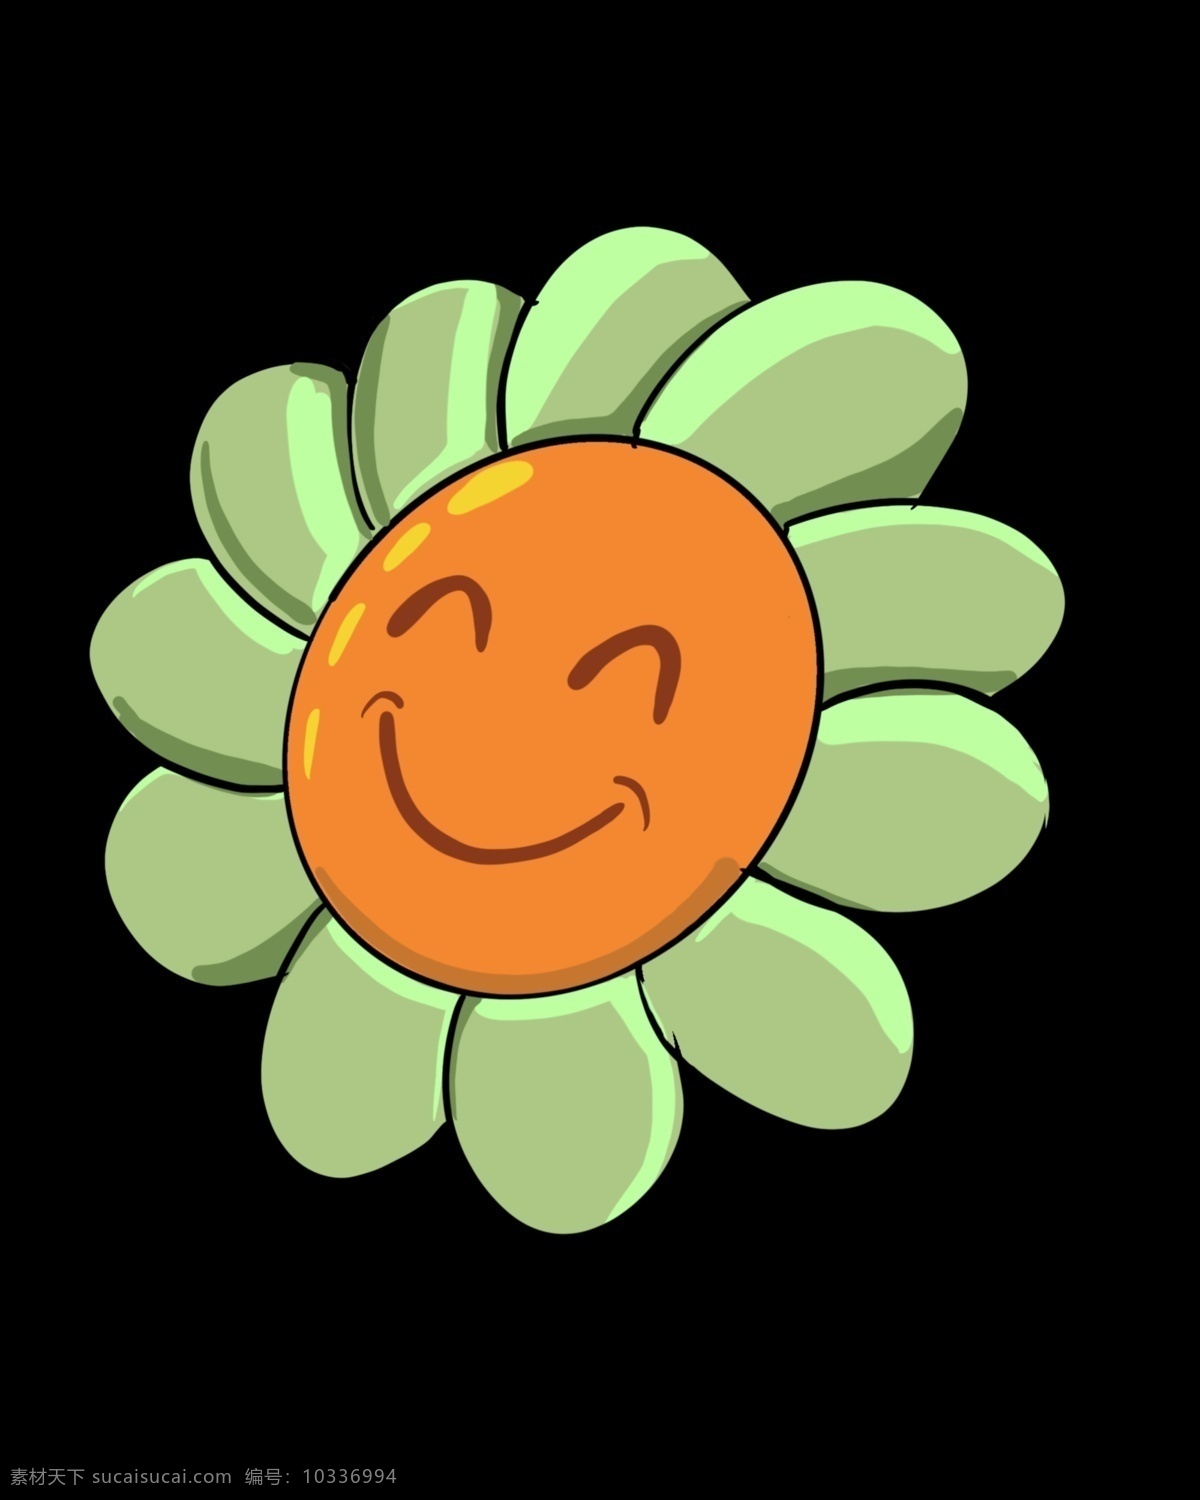 卡通 绿色 向日葵 插画 植物 卡通植物插画 绿色的向日葵 开心的向日葵 向日葵插画 精美的植物